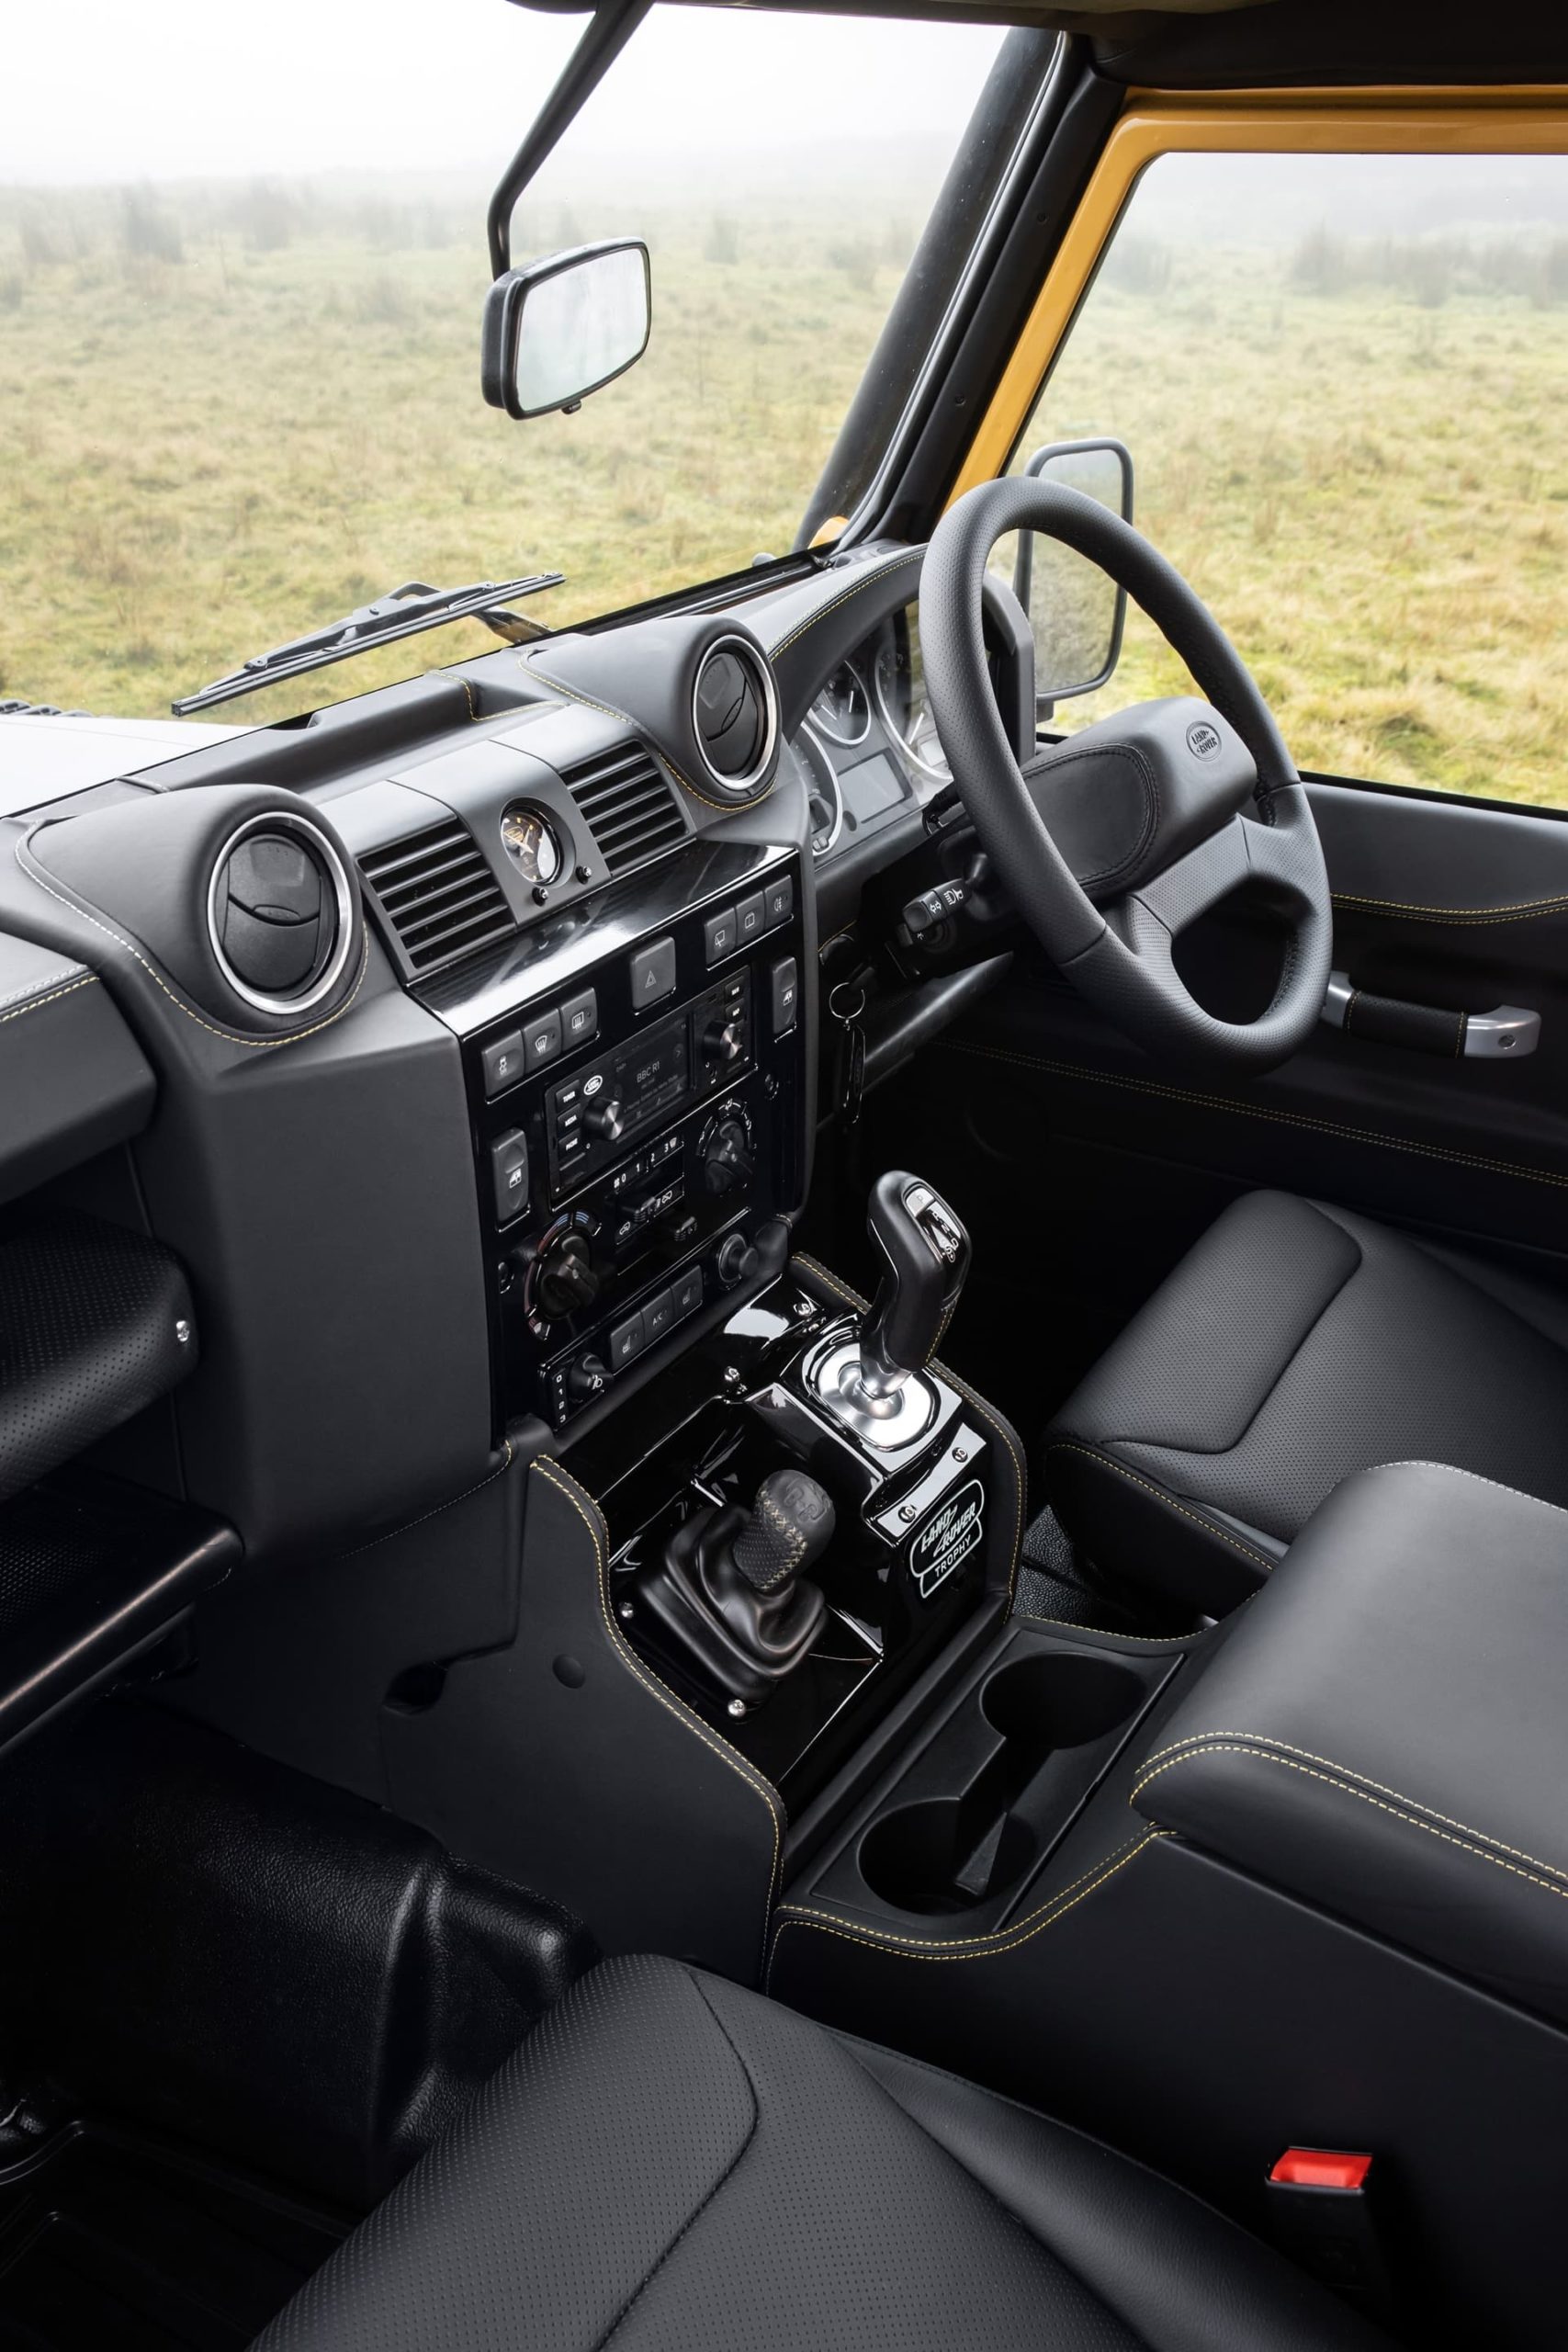 Land Rover Defender Works V8 Trophy 2021 036